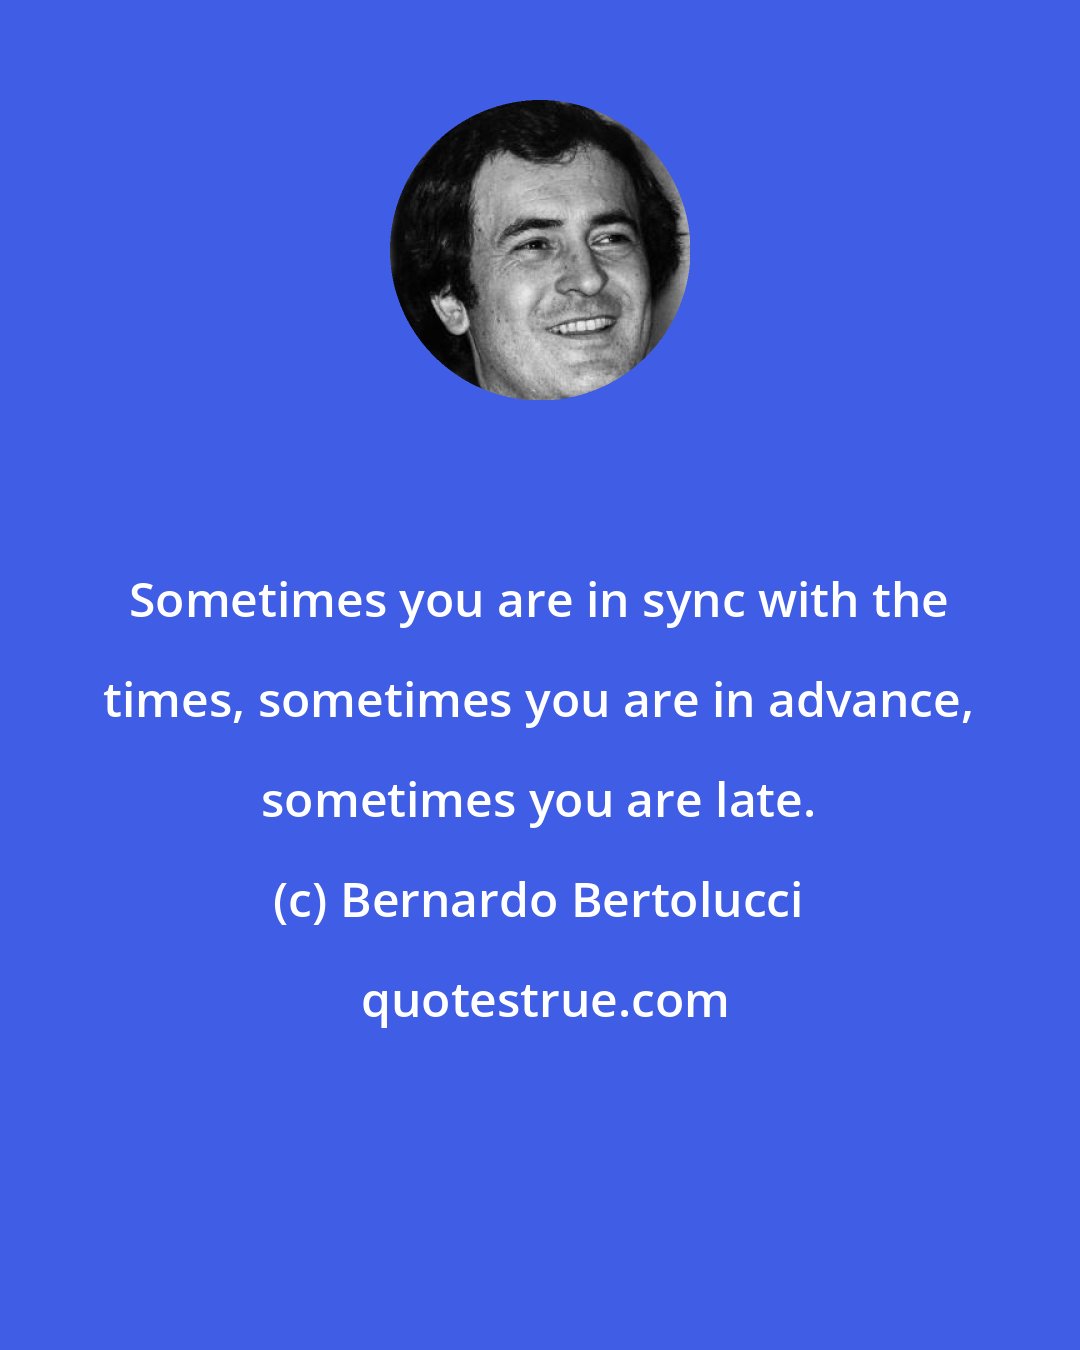 Bernardo Bertolucci: Sometimes you are in sync with the times, sometimes you are in advance, sometimes you are late.